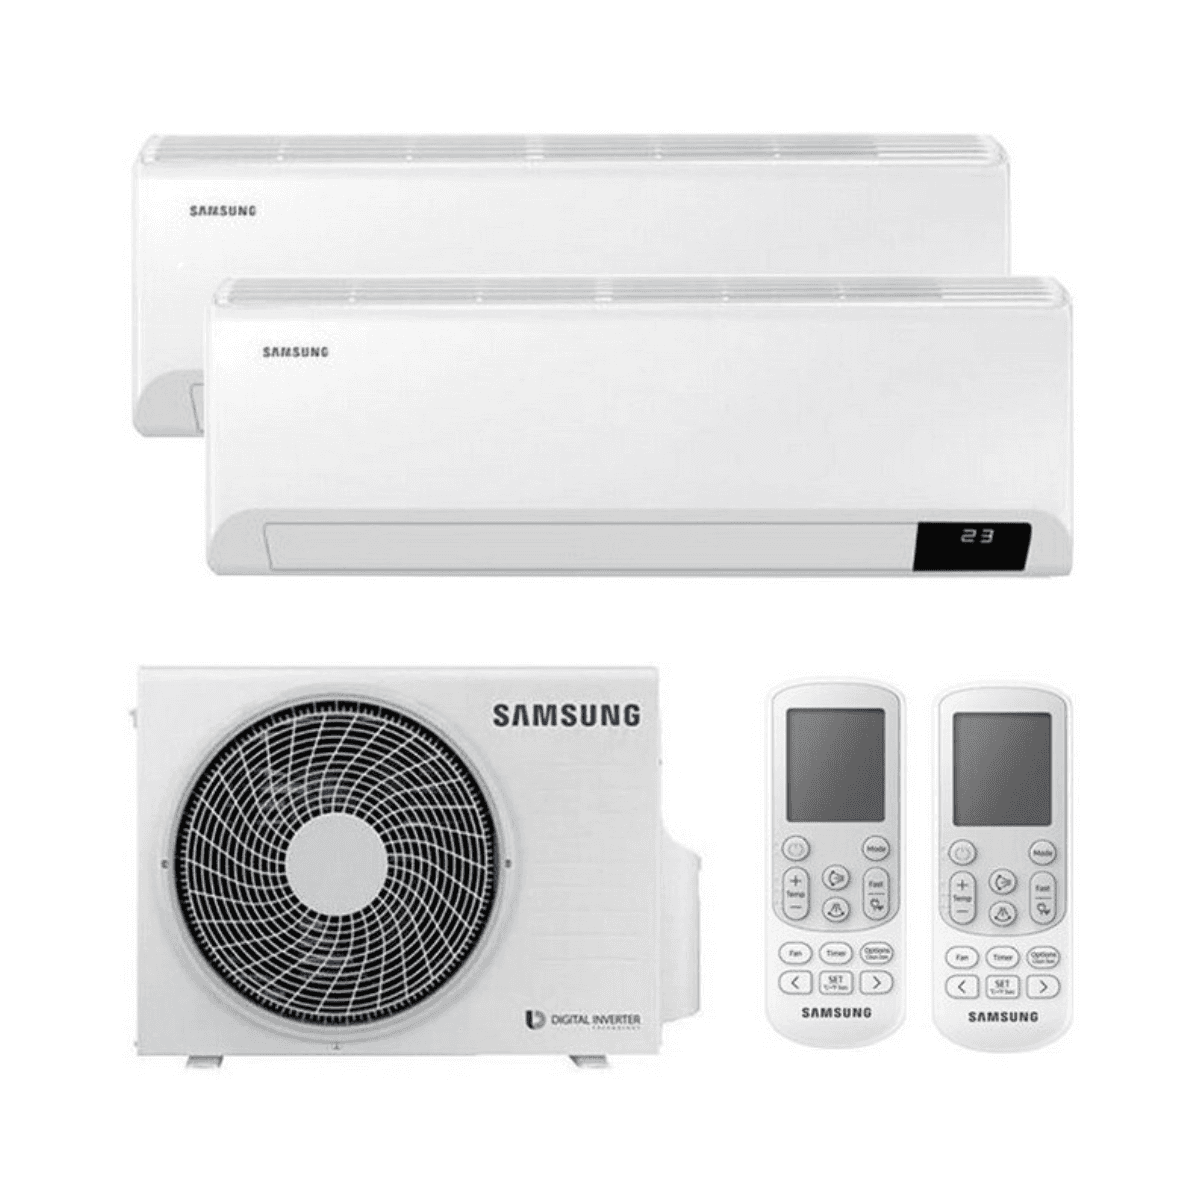 Multisplit-Klimaanlage 2x1 Samsung Wind Free Comfort 2,5 kW 9000 BTU + 5,0 kW 18000 BTU mit der Referenz KITSAMWINDFREE09+18 von der Marke SAMSUNG